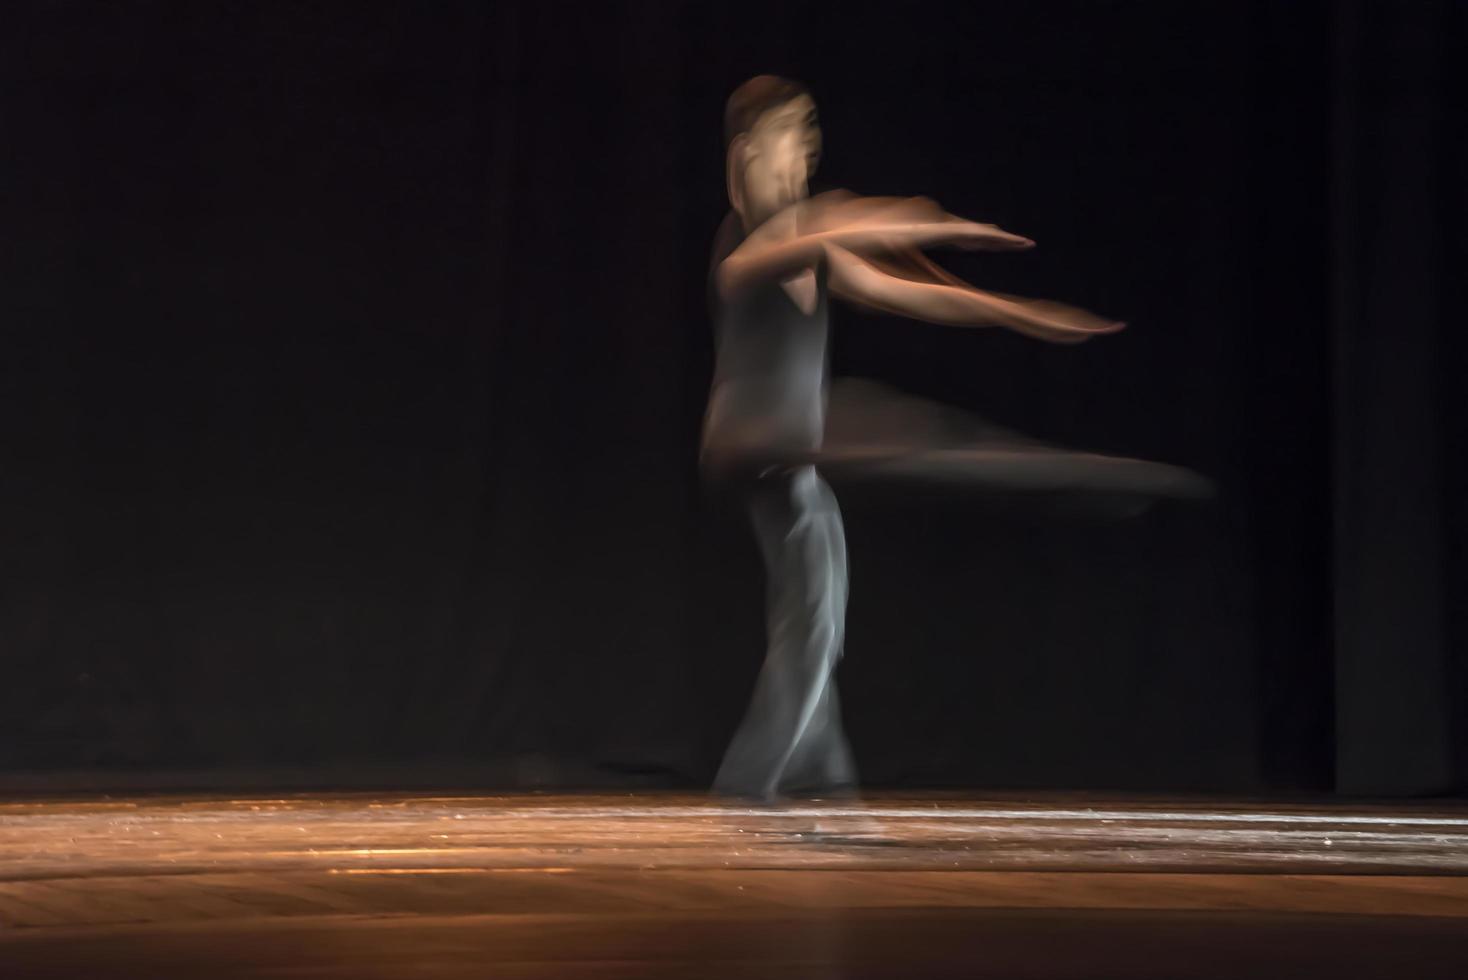 el movimiento abstracto de la danza foto